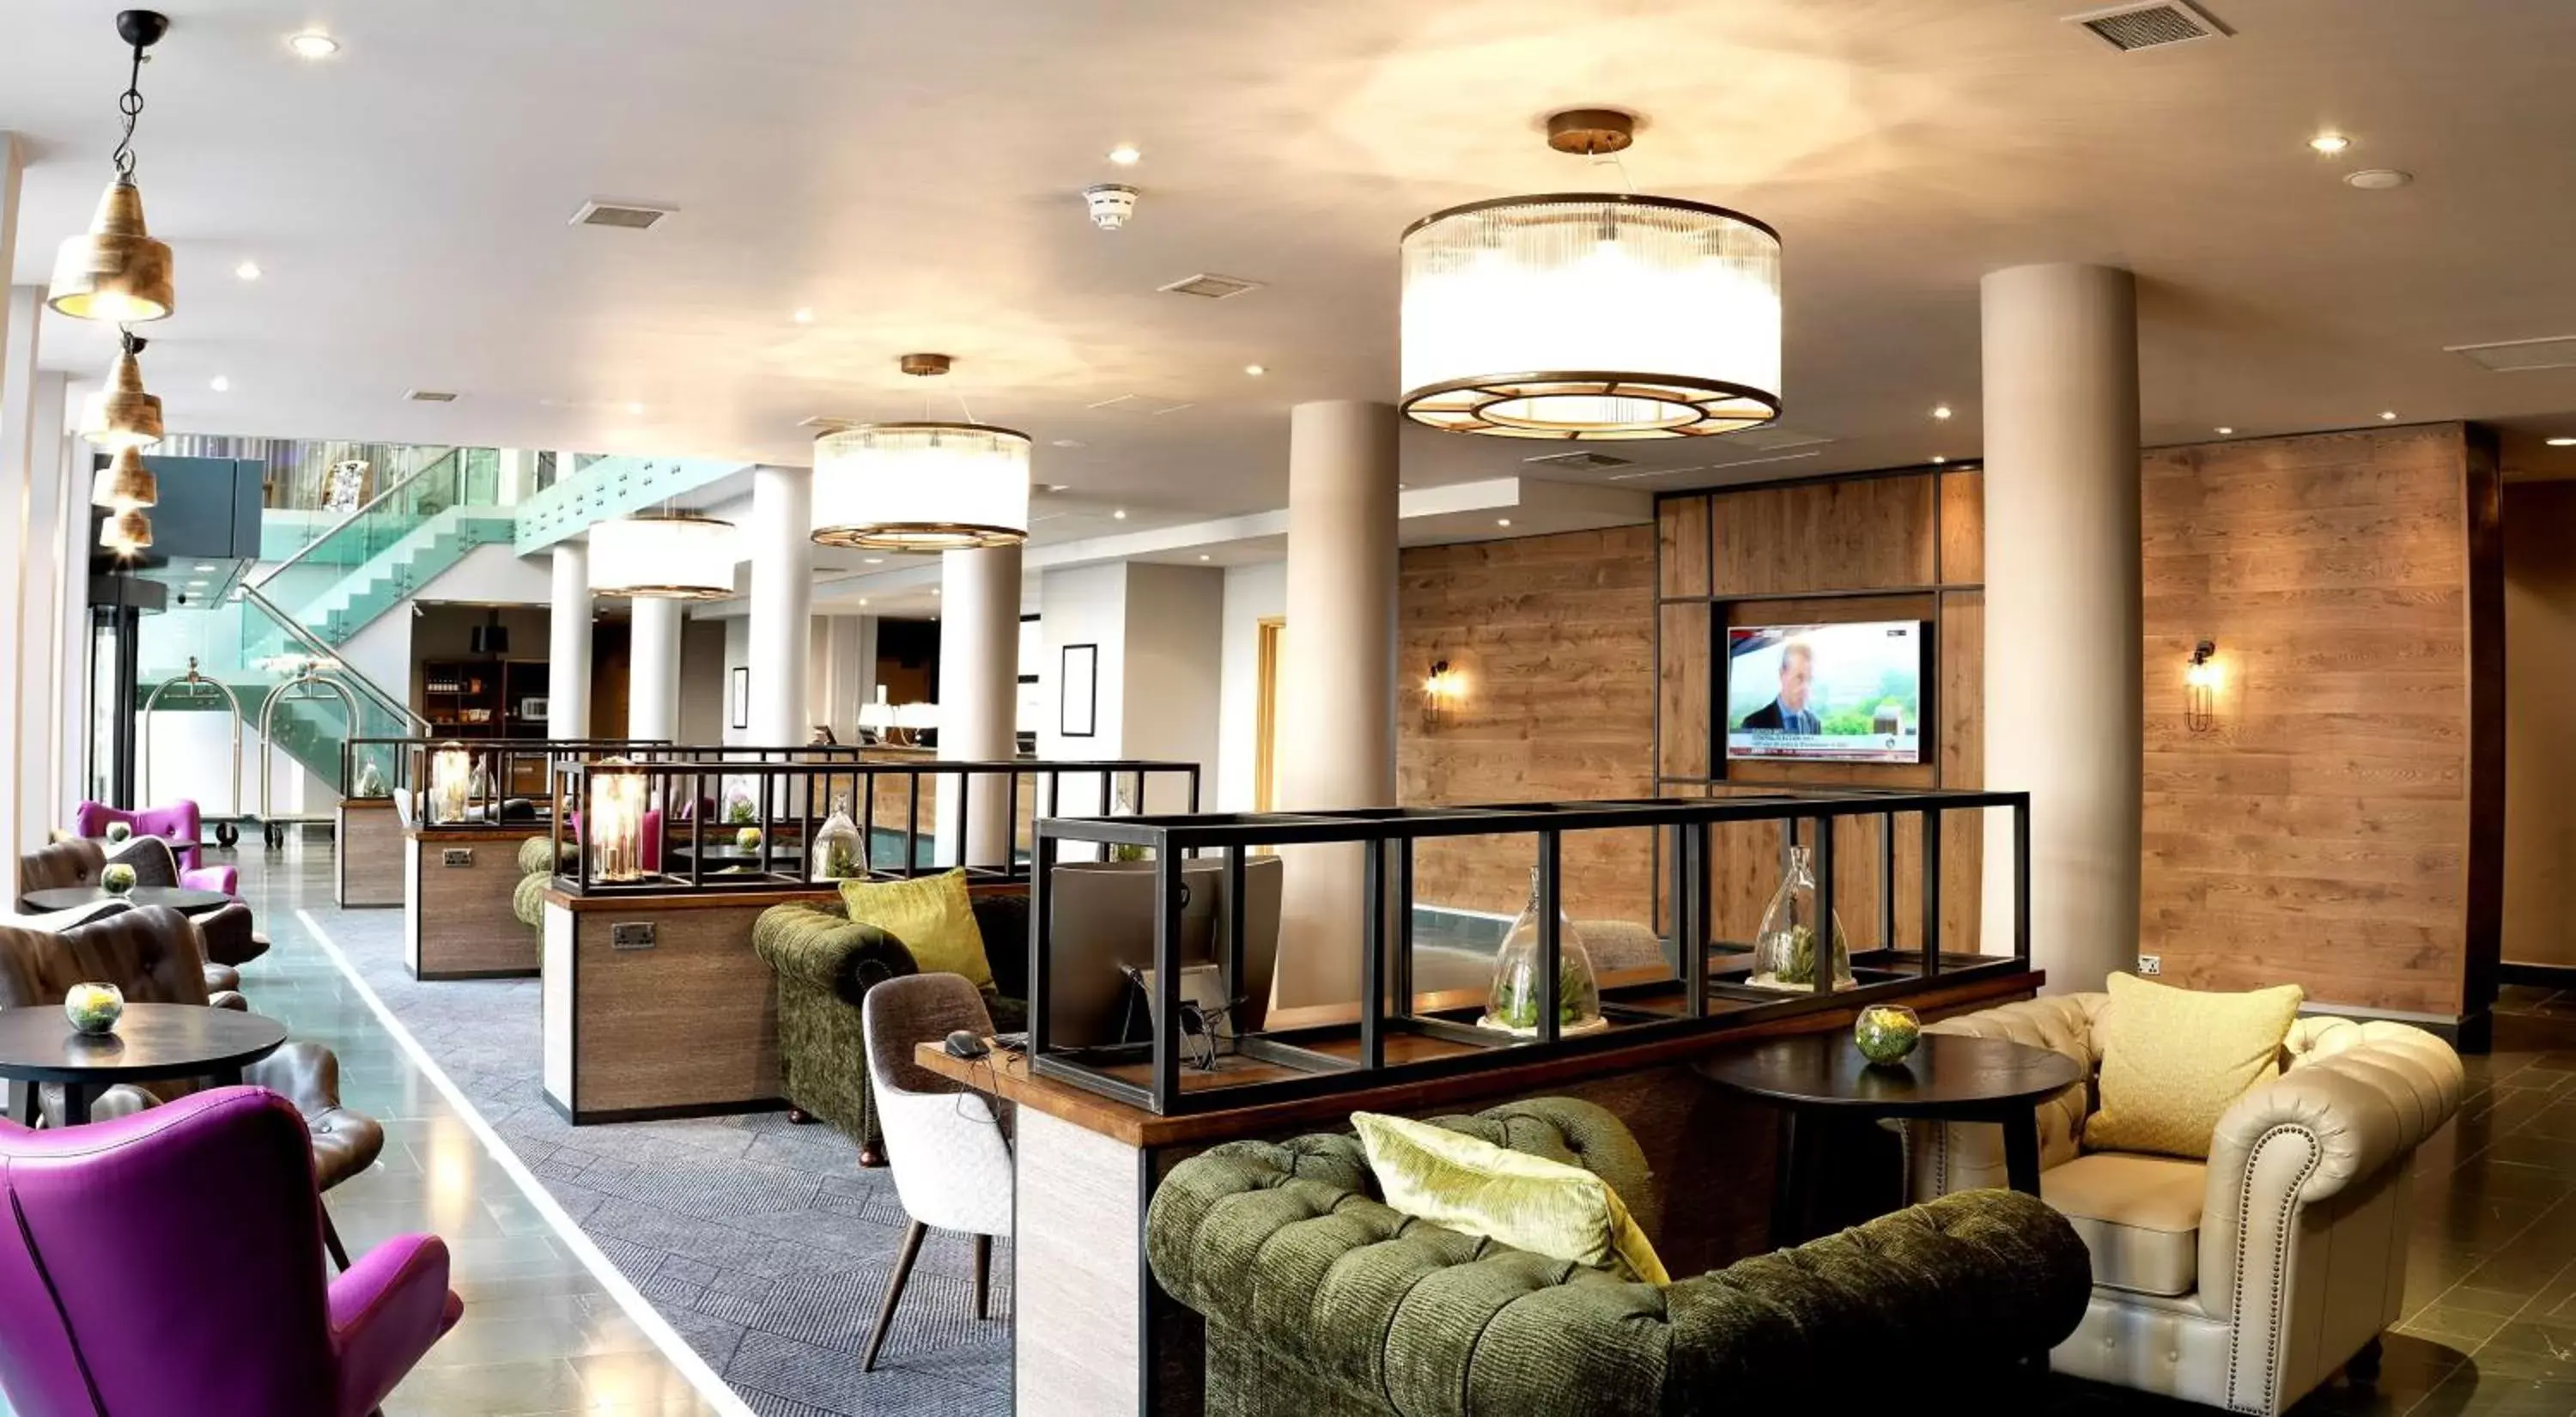 Lounge or bar, Lobby/Reception in Hilton Garden Inn Birmingham Brindley Place